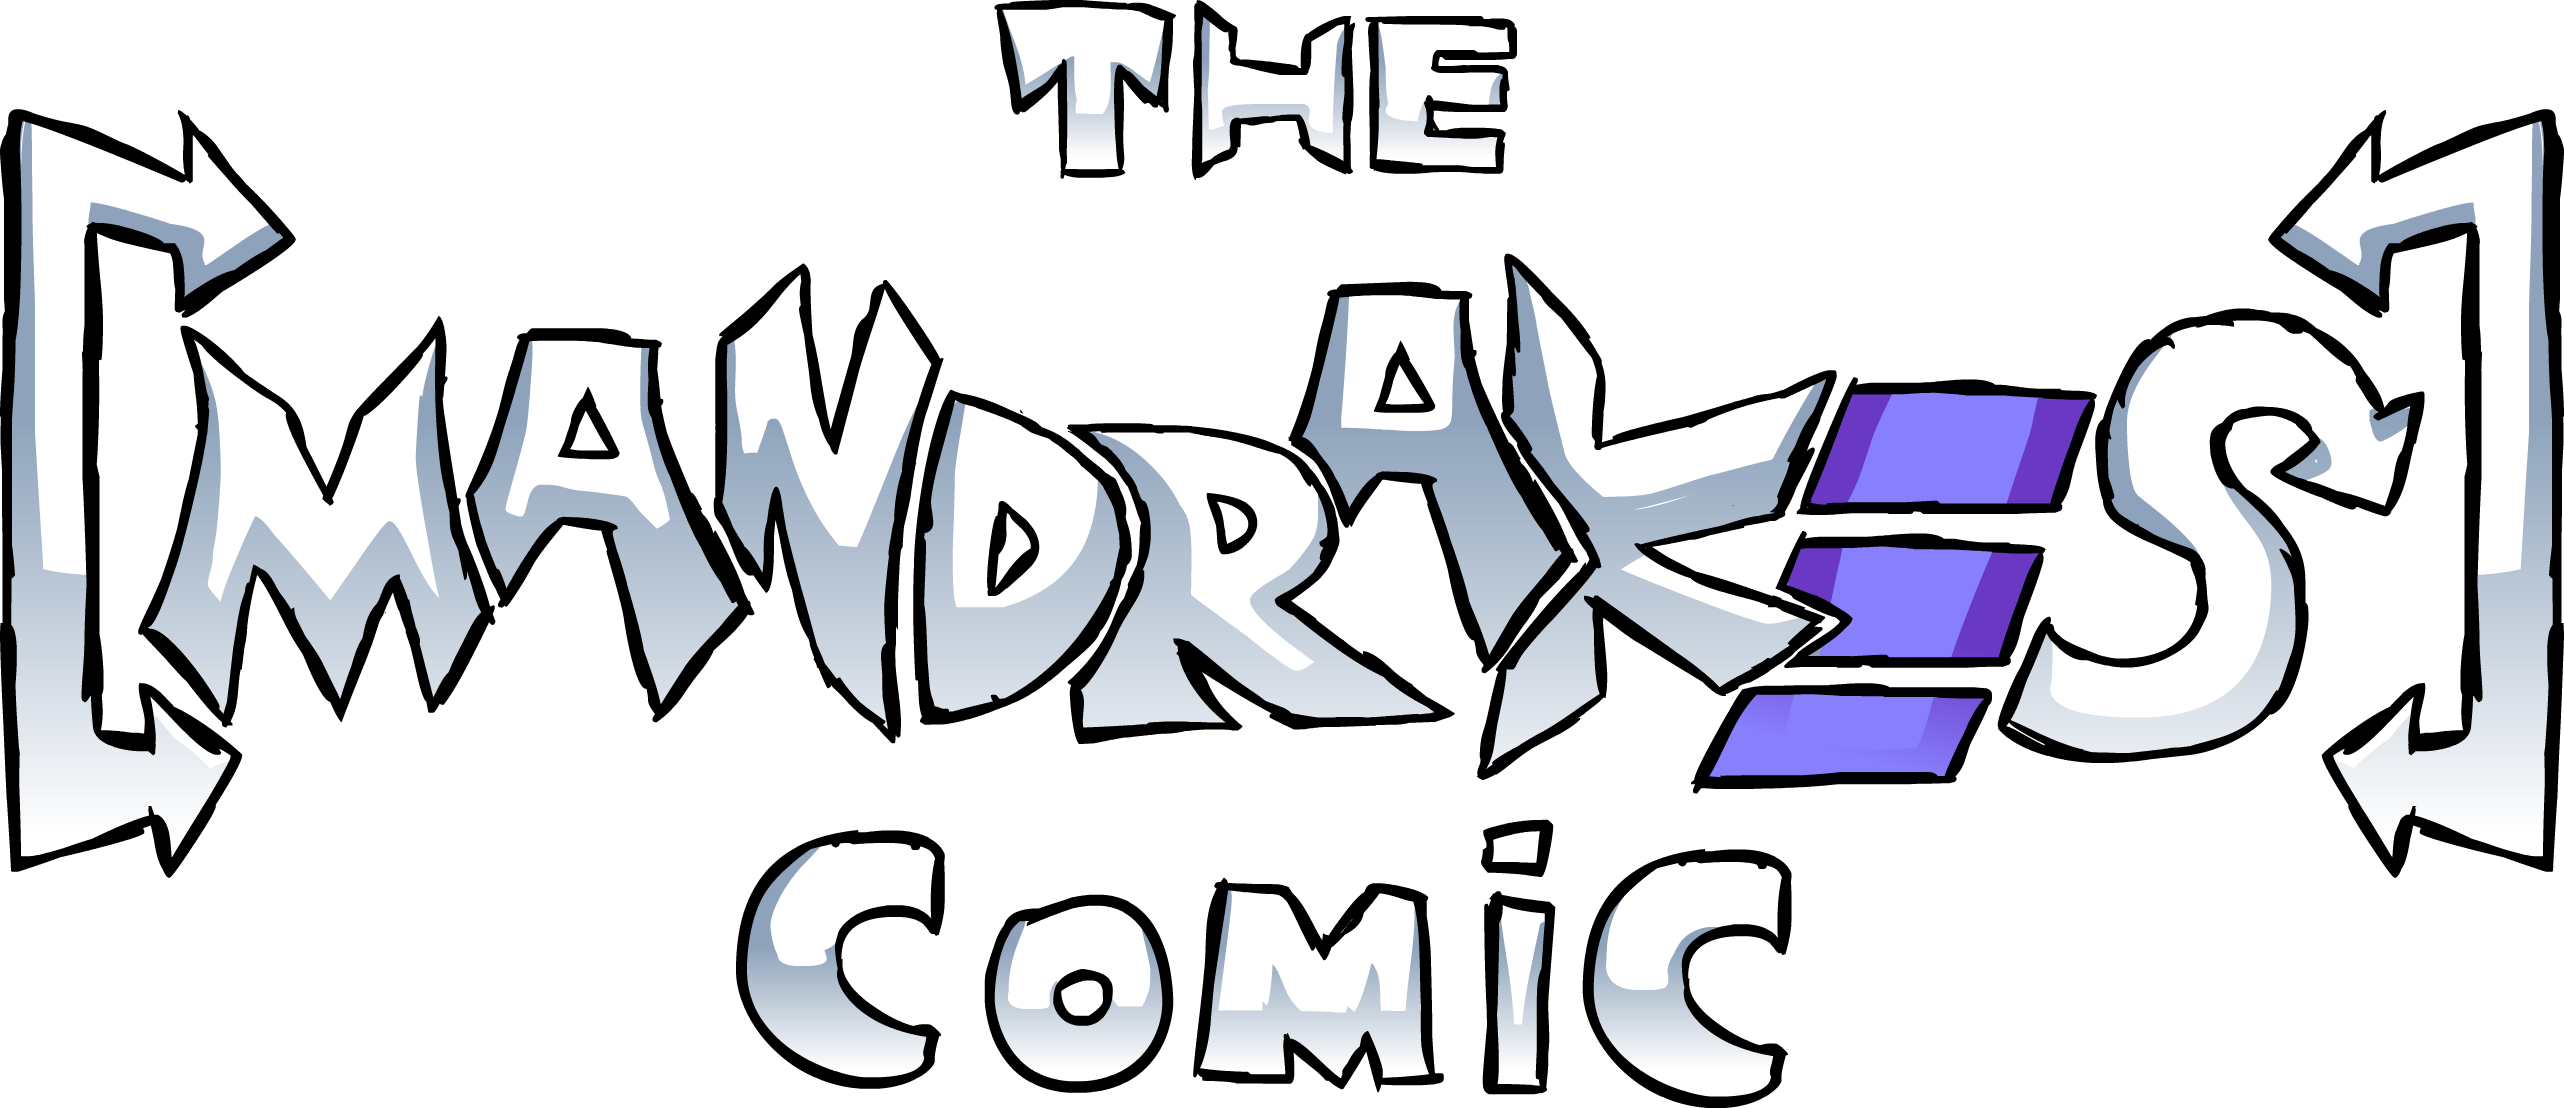 The Mandrakes Comic